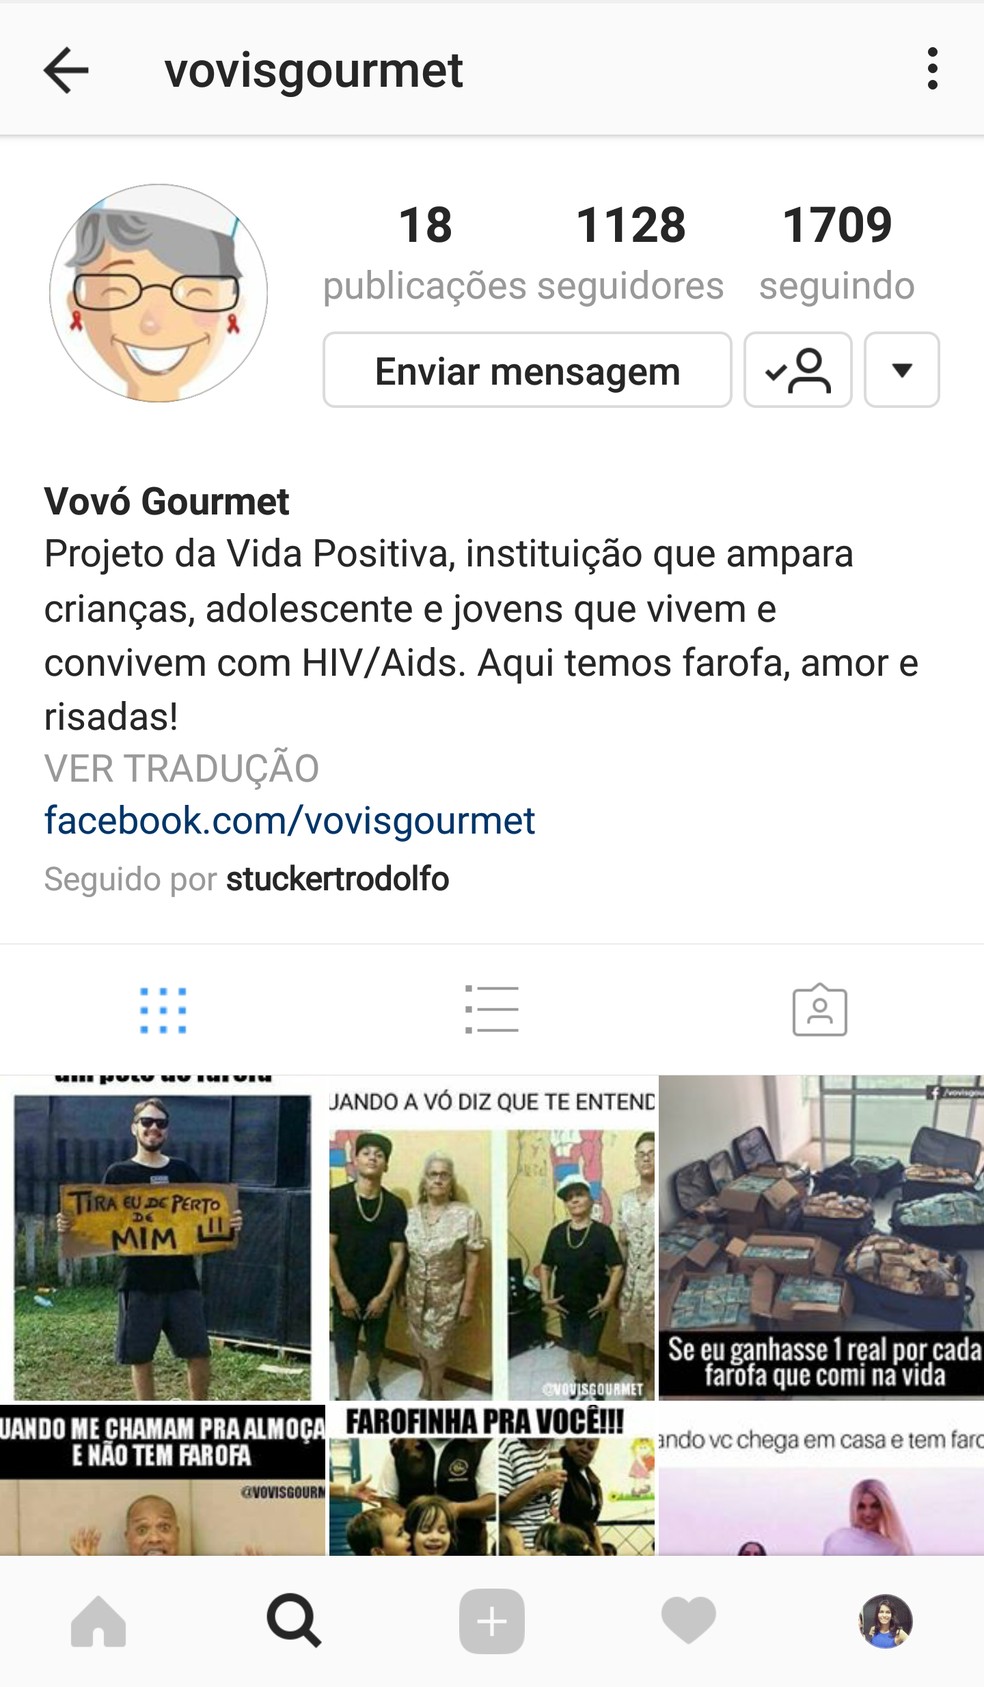 Página em rede social que divulga farofas gourmet em Brasília (Foto: Reprodução)